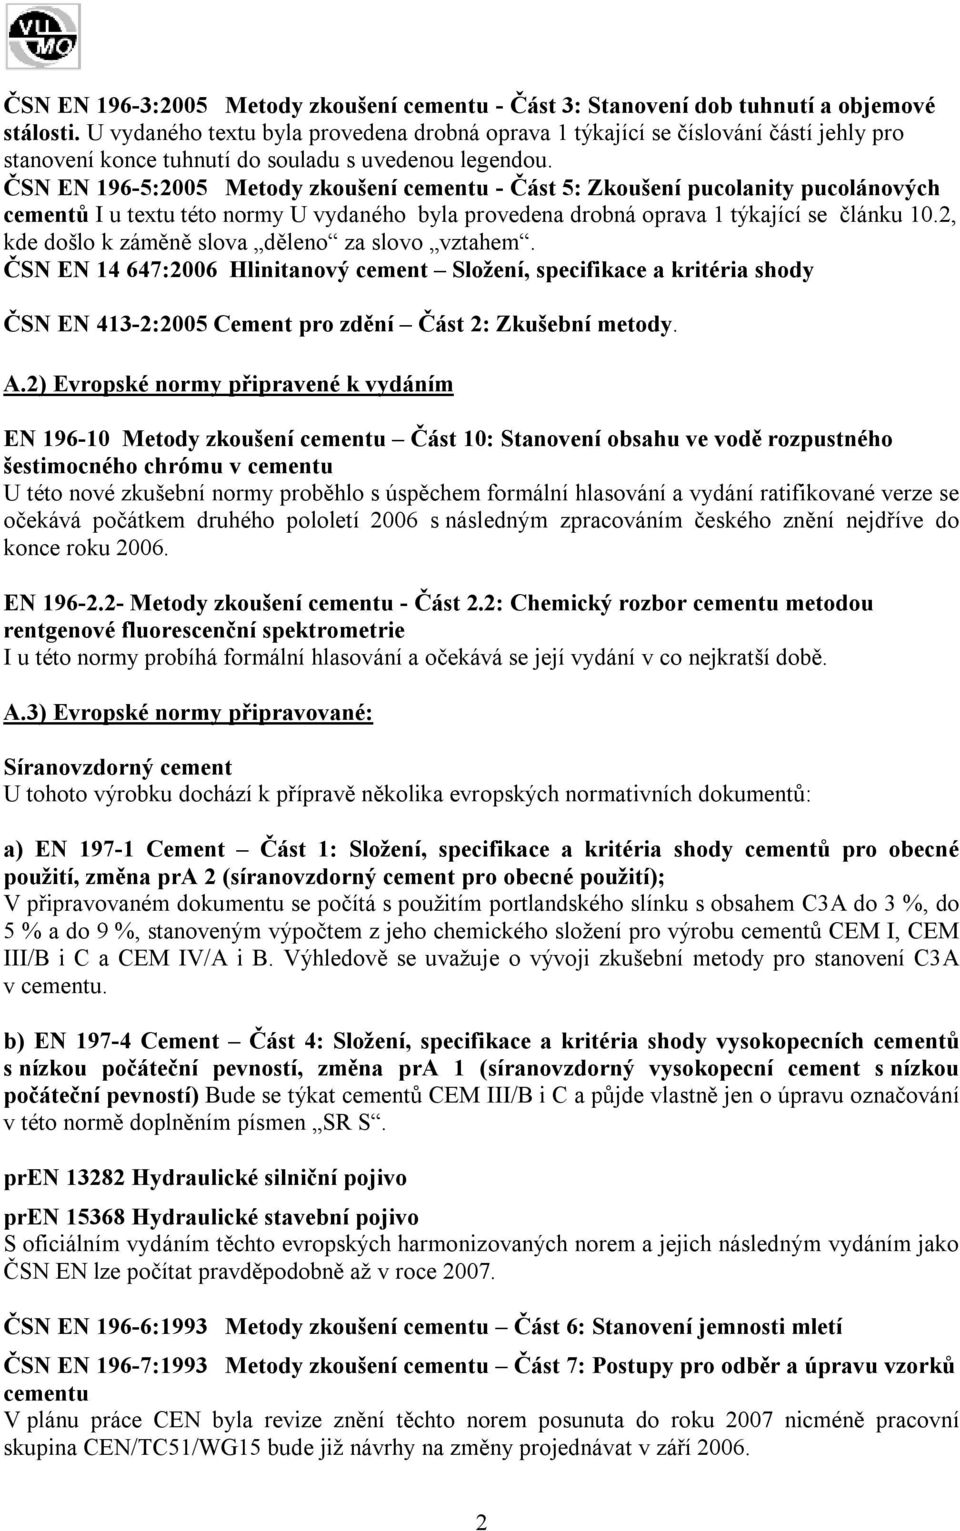 ČSN EN 196-5:2005 Metody zkoušení cementu - Část 5: Zkoušení pucolanity pucolánových cementů I u textu této normy U vydaného byla provedena drobná oprava 1 týkající se článku 10.